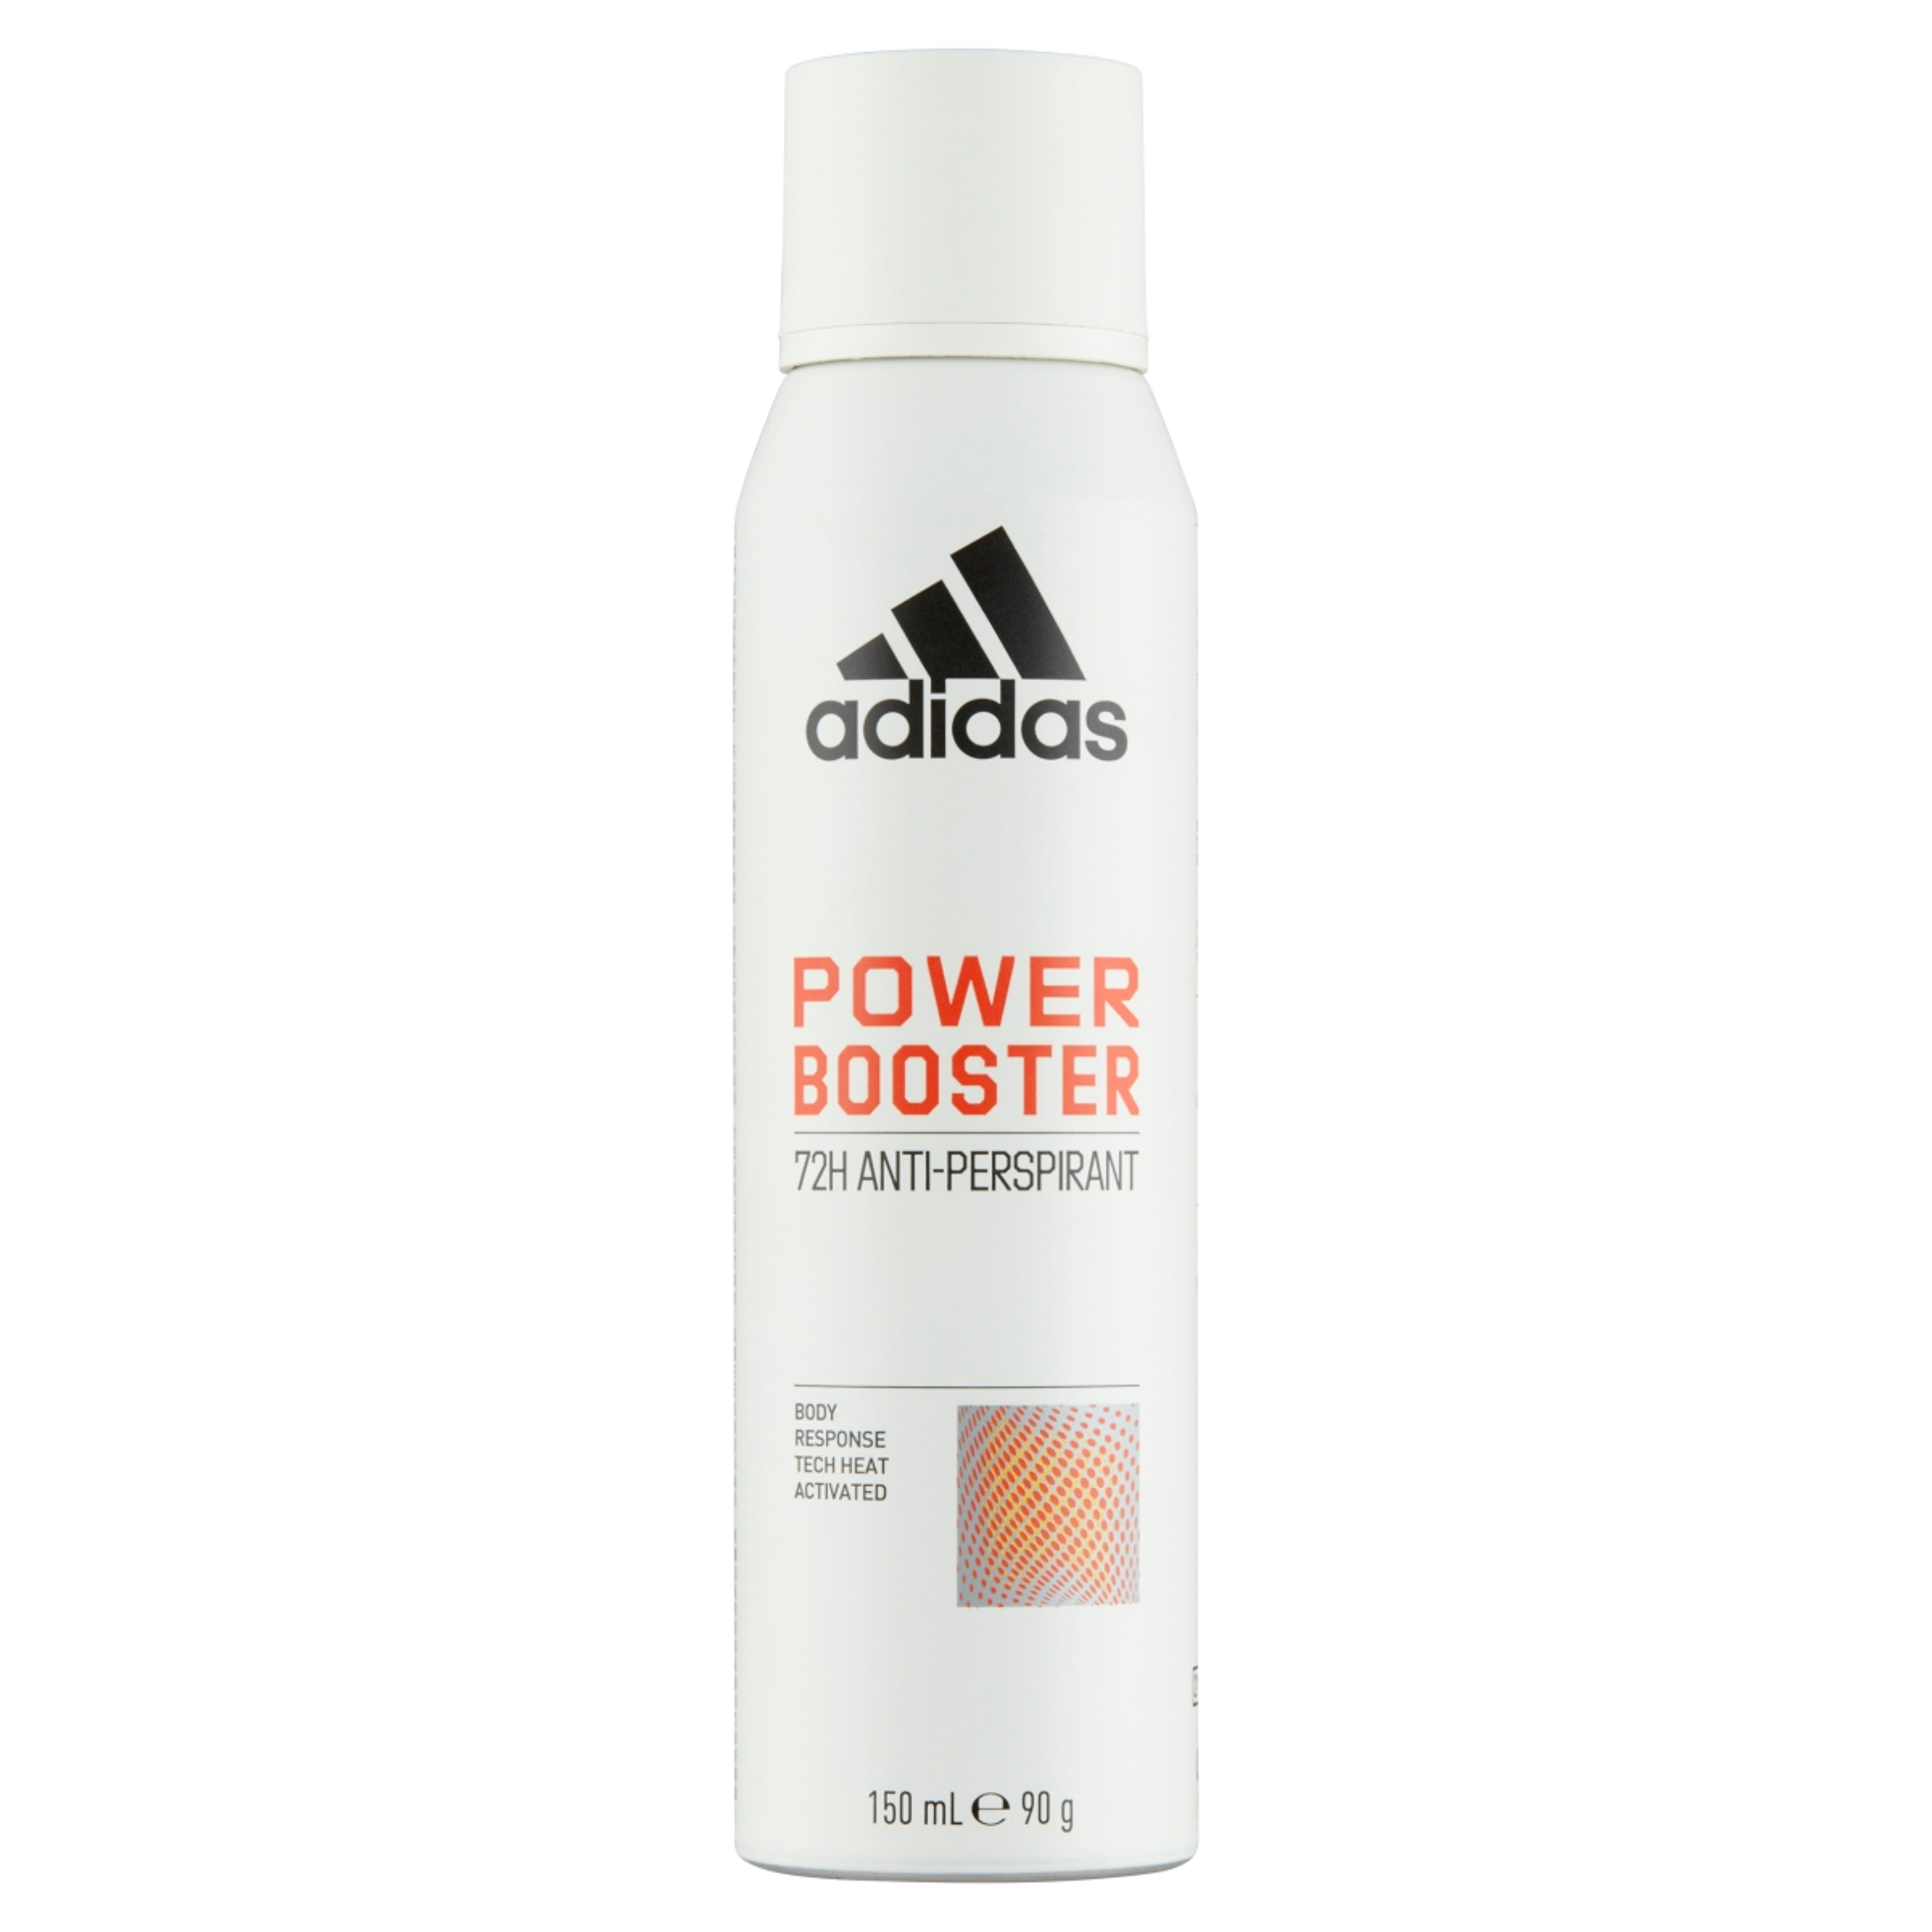 Adidas Power Booster női izzadásgátló dezodor - 150 ml